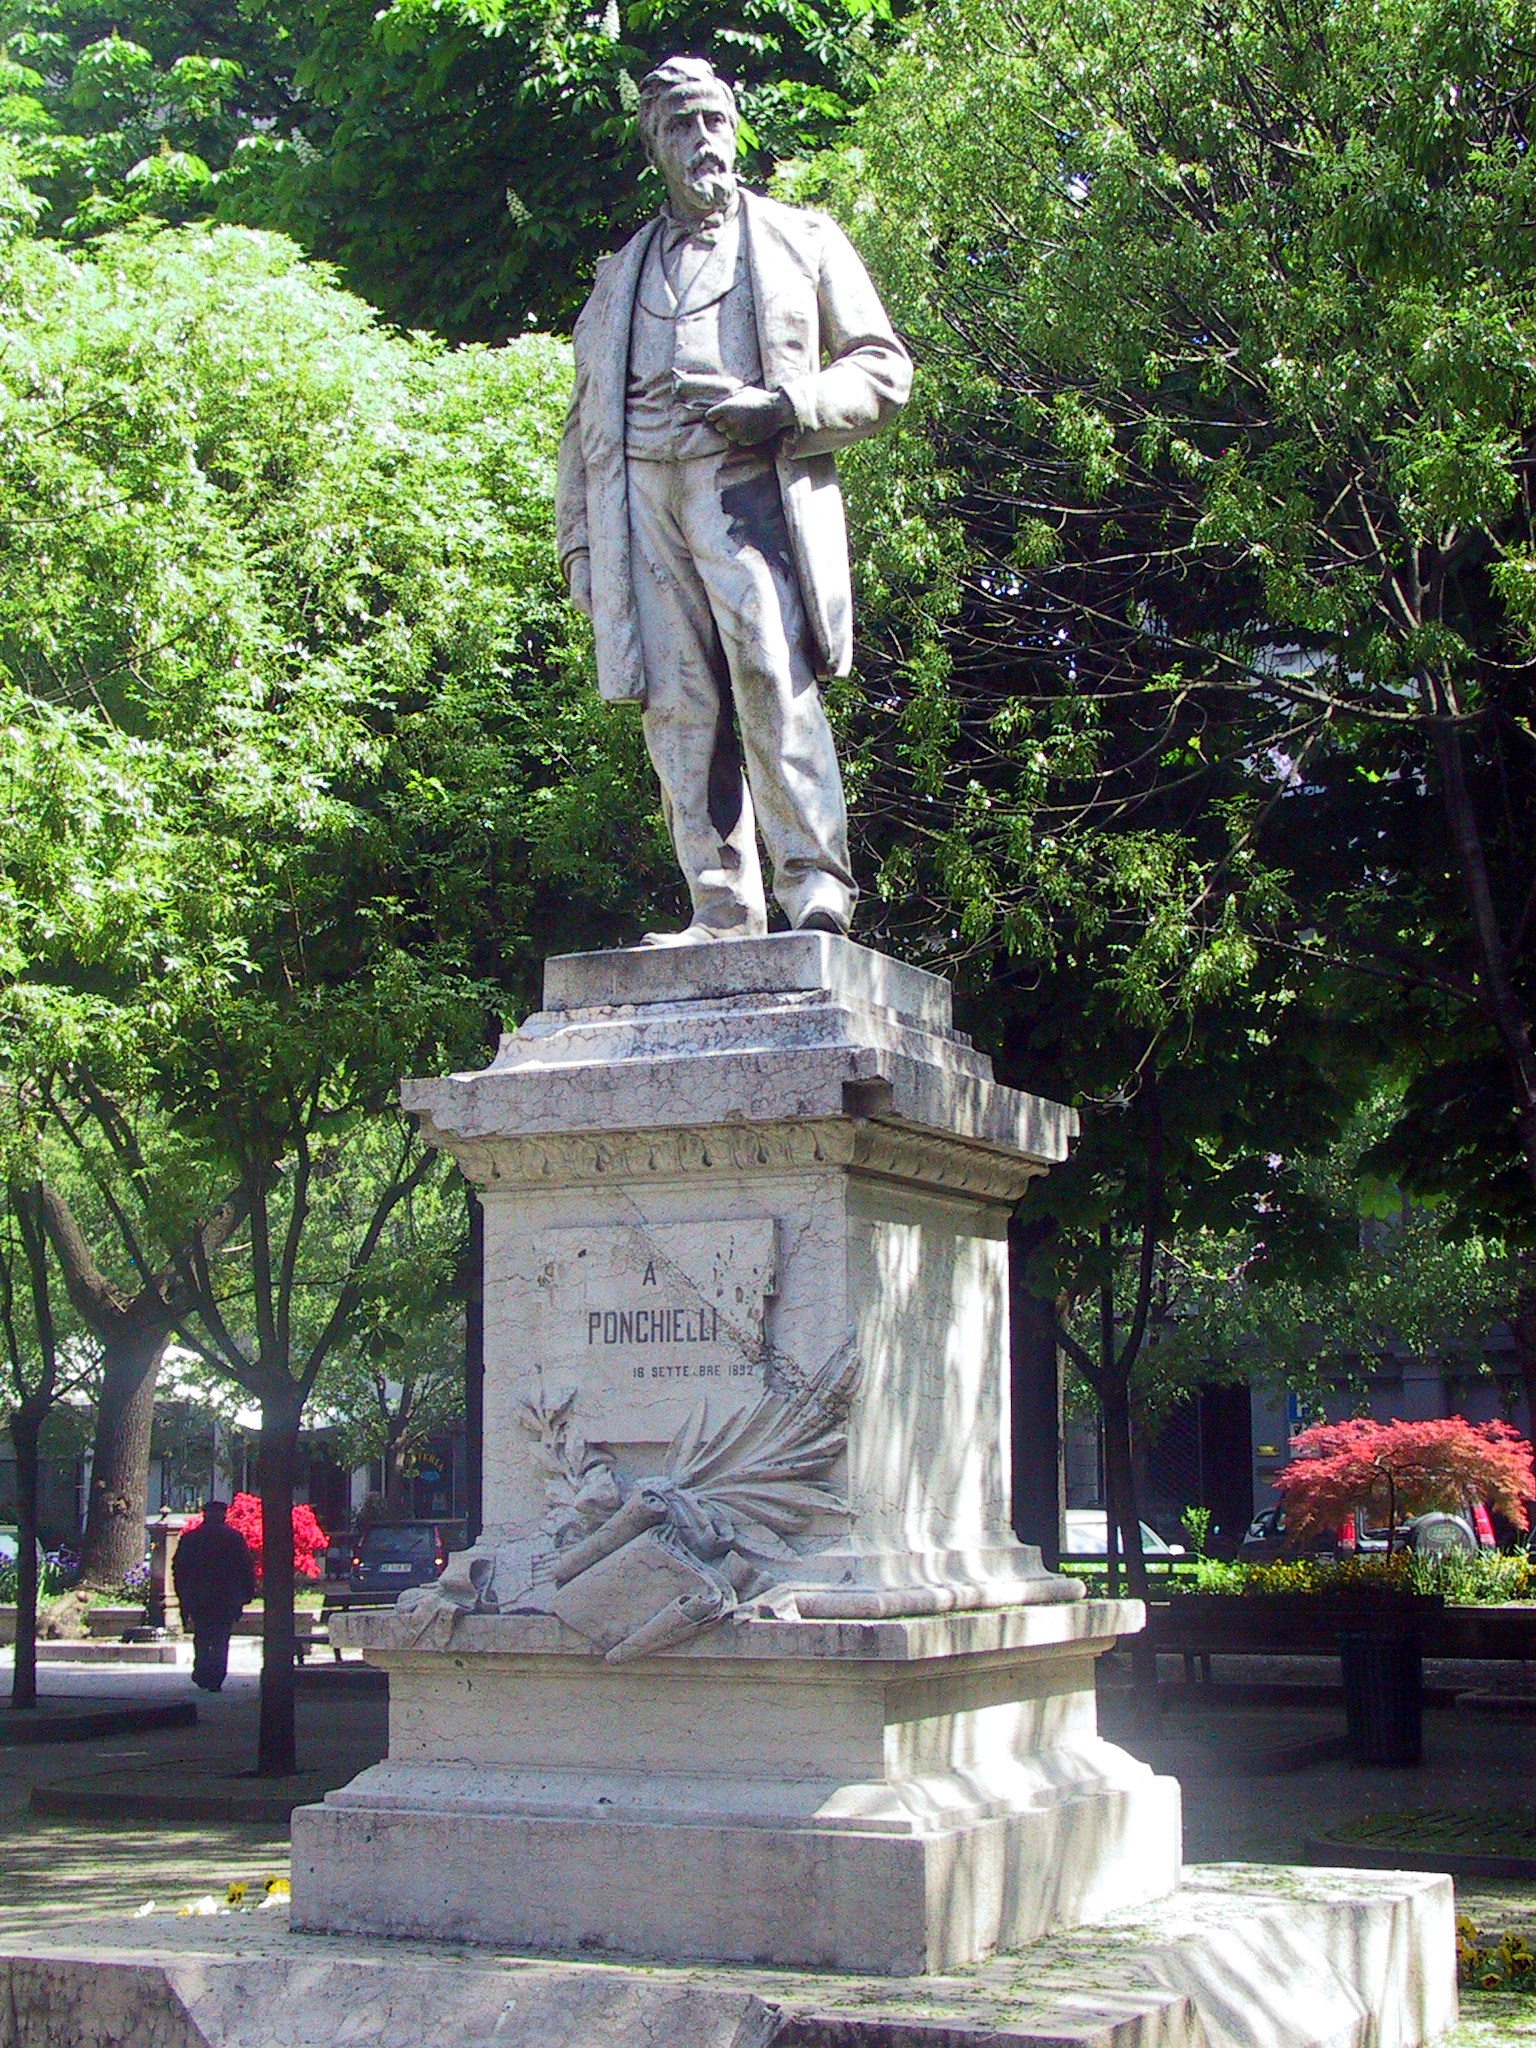 Ponchielli Statue